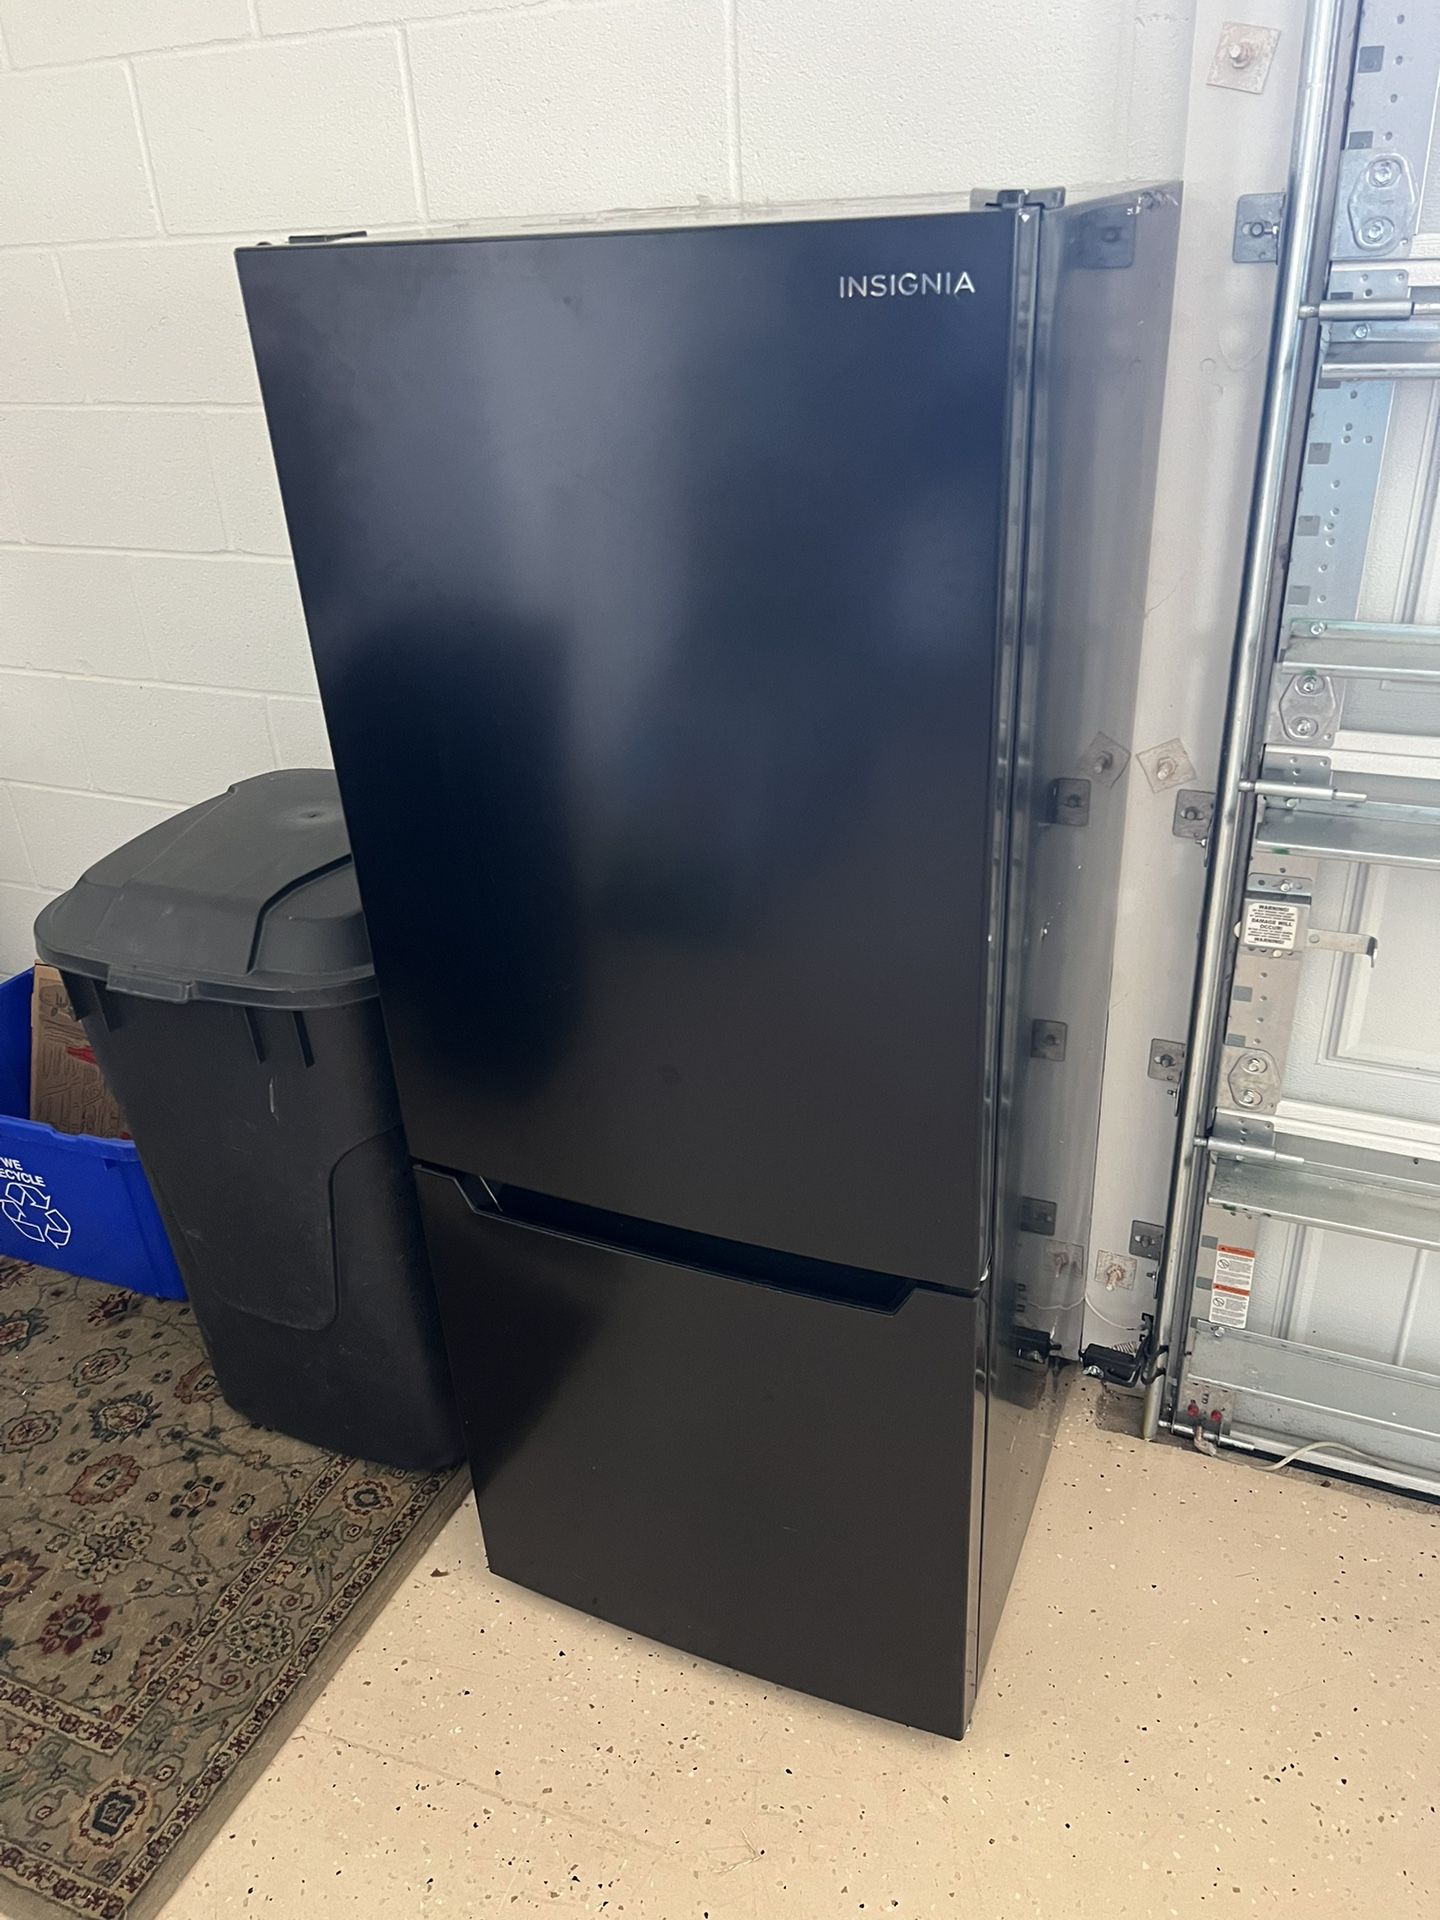 Insignia Refrigerator Freezer